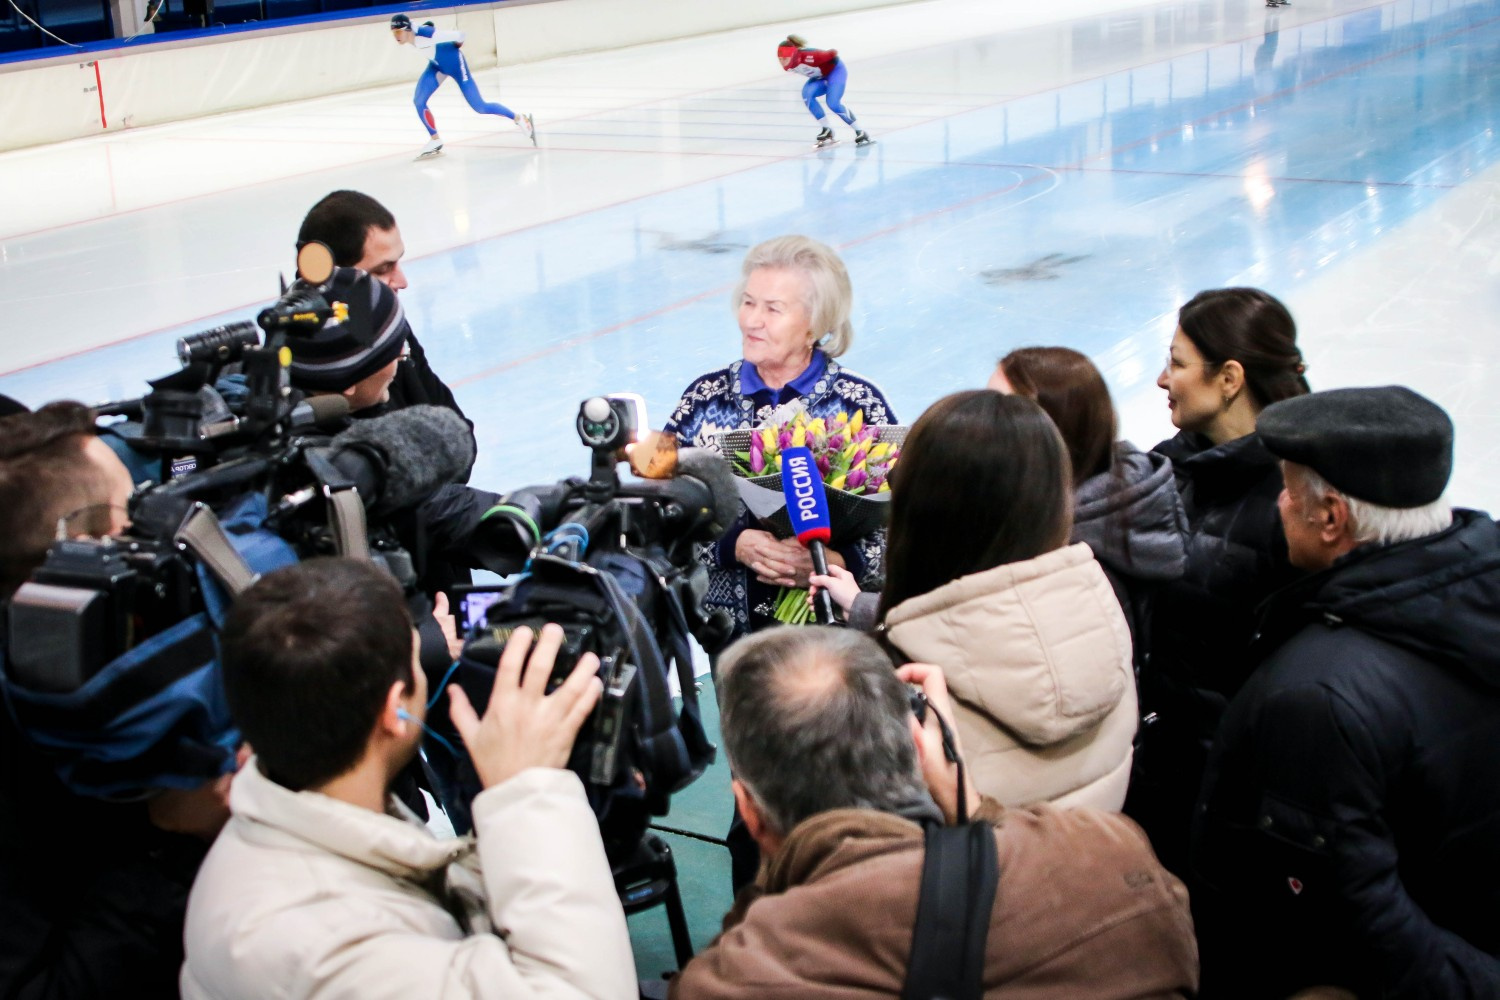 Пока спортсмены рассекали лёд, журналисты «пытали» Лидию Скобликову о то, что она думает о решении МОК лишить челябинскую конькобежку Фаткулину олимпийской медали